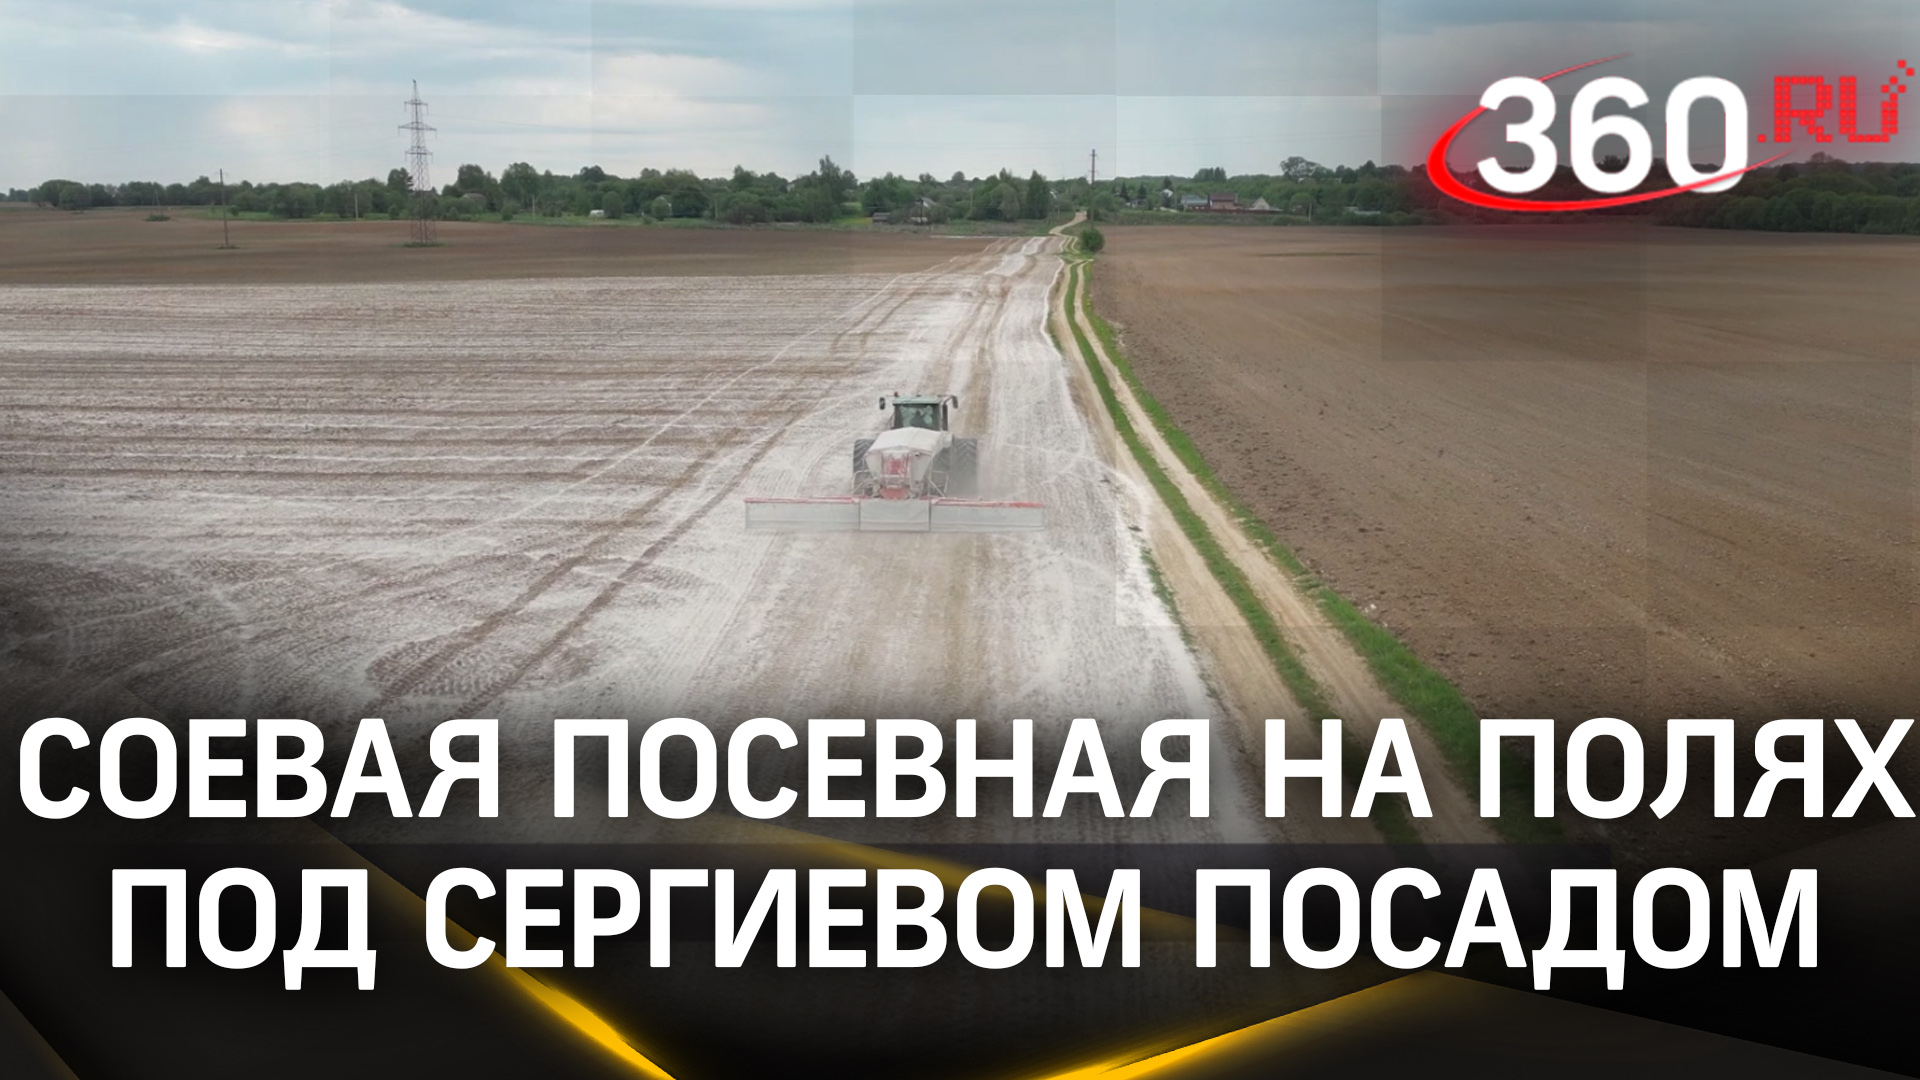 Пшеница, горох и соя: почти 3 тыс. га земли засеял кооператив «Кузьминский» в Сергиевом Посаде